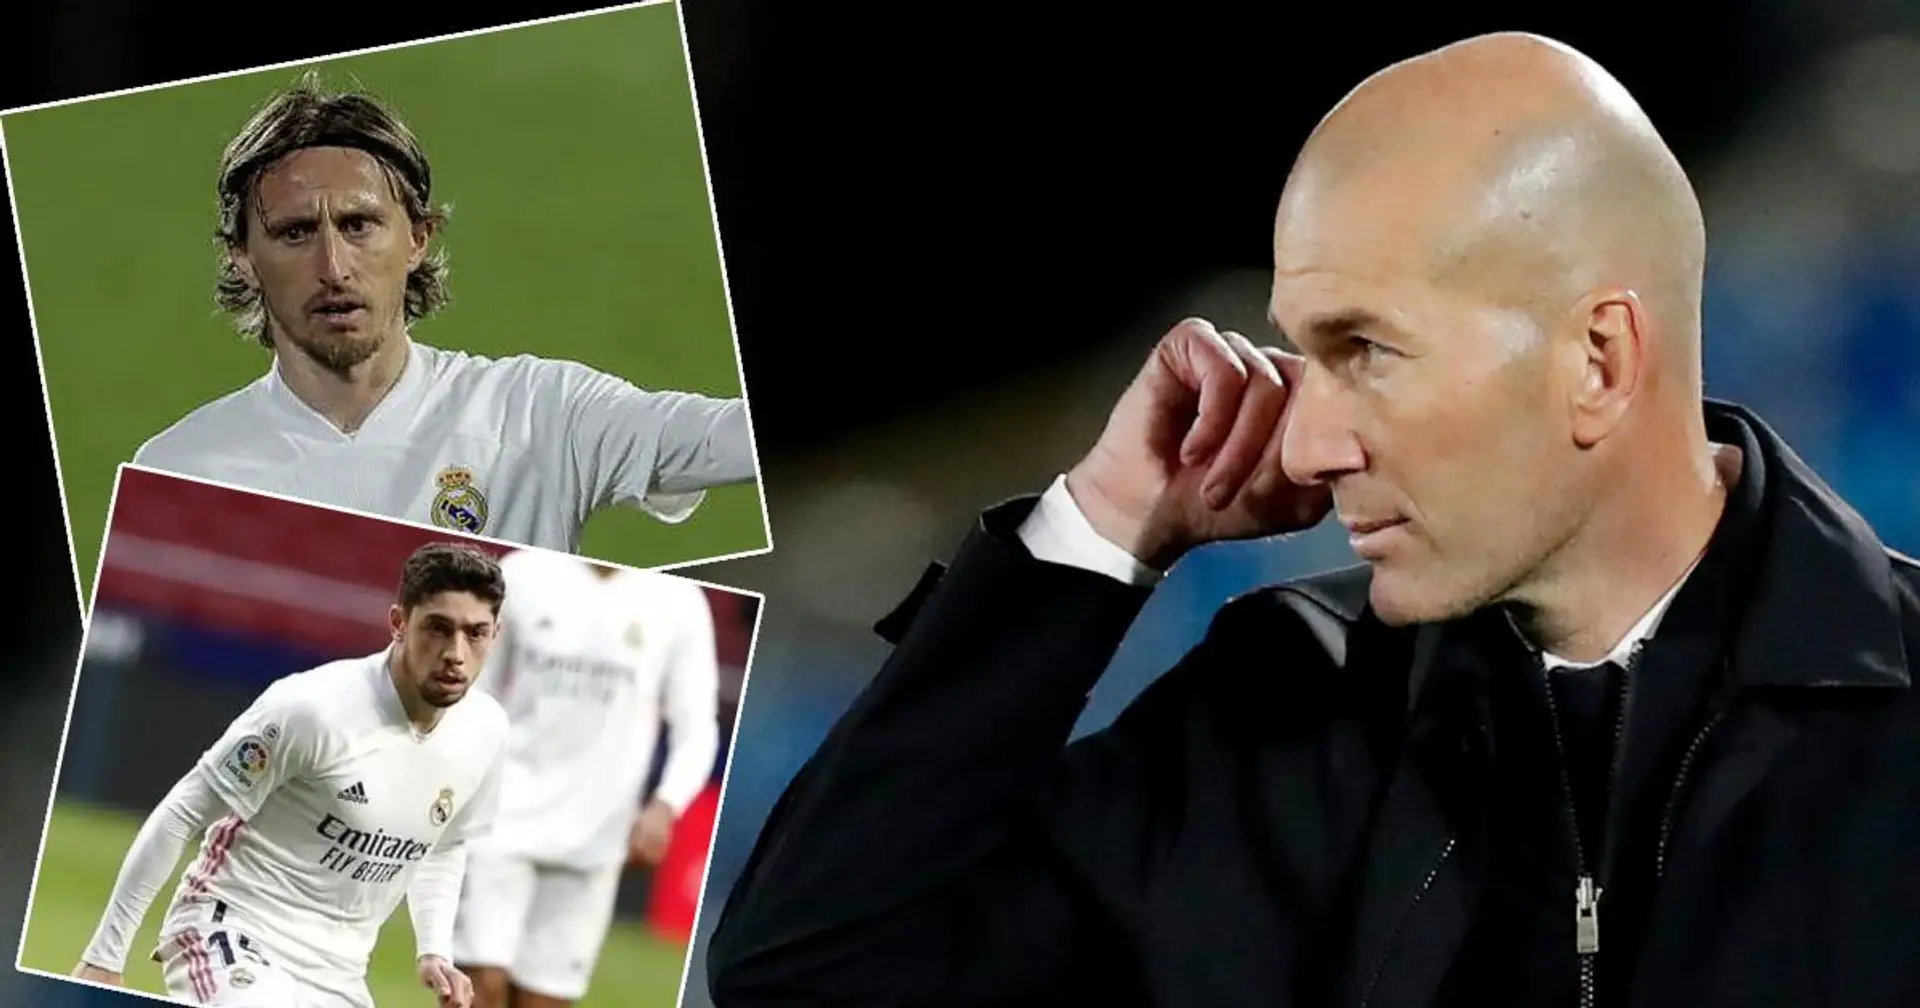 XI discutable, changements moyens: évaluation des décisions de Zidane de 1 à 10 lors du match nul face à Séville